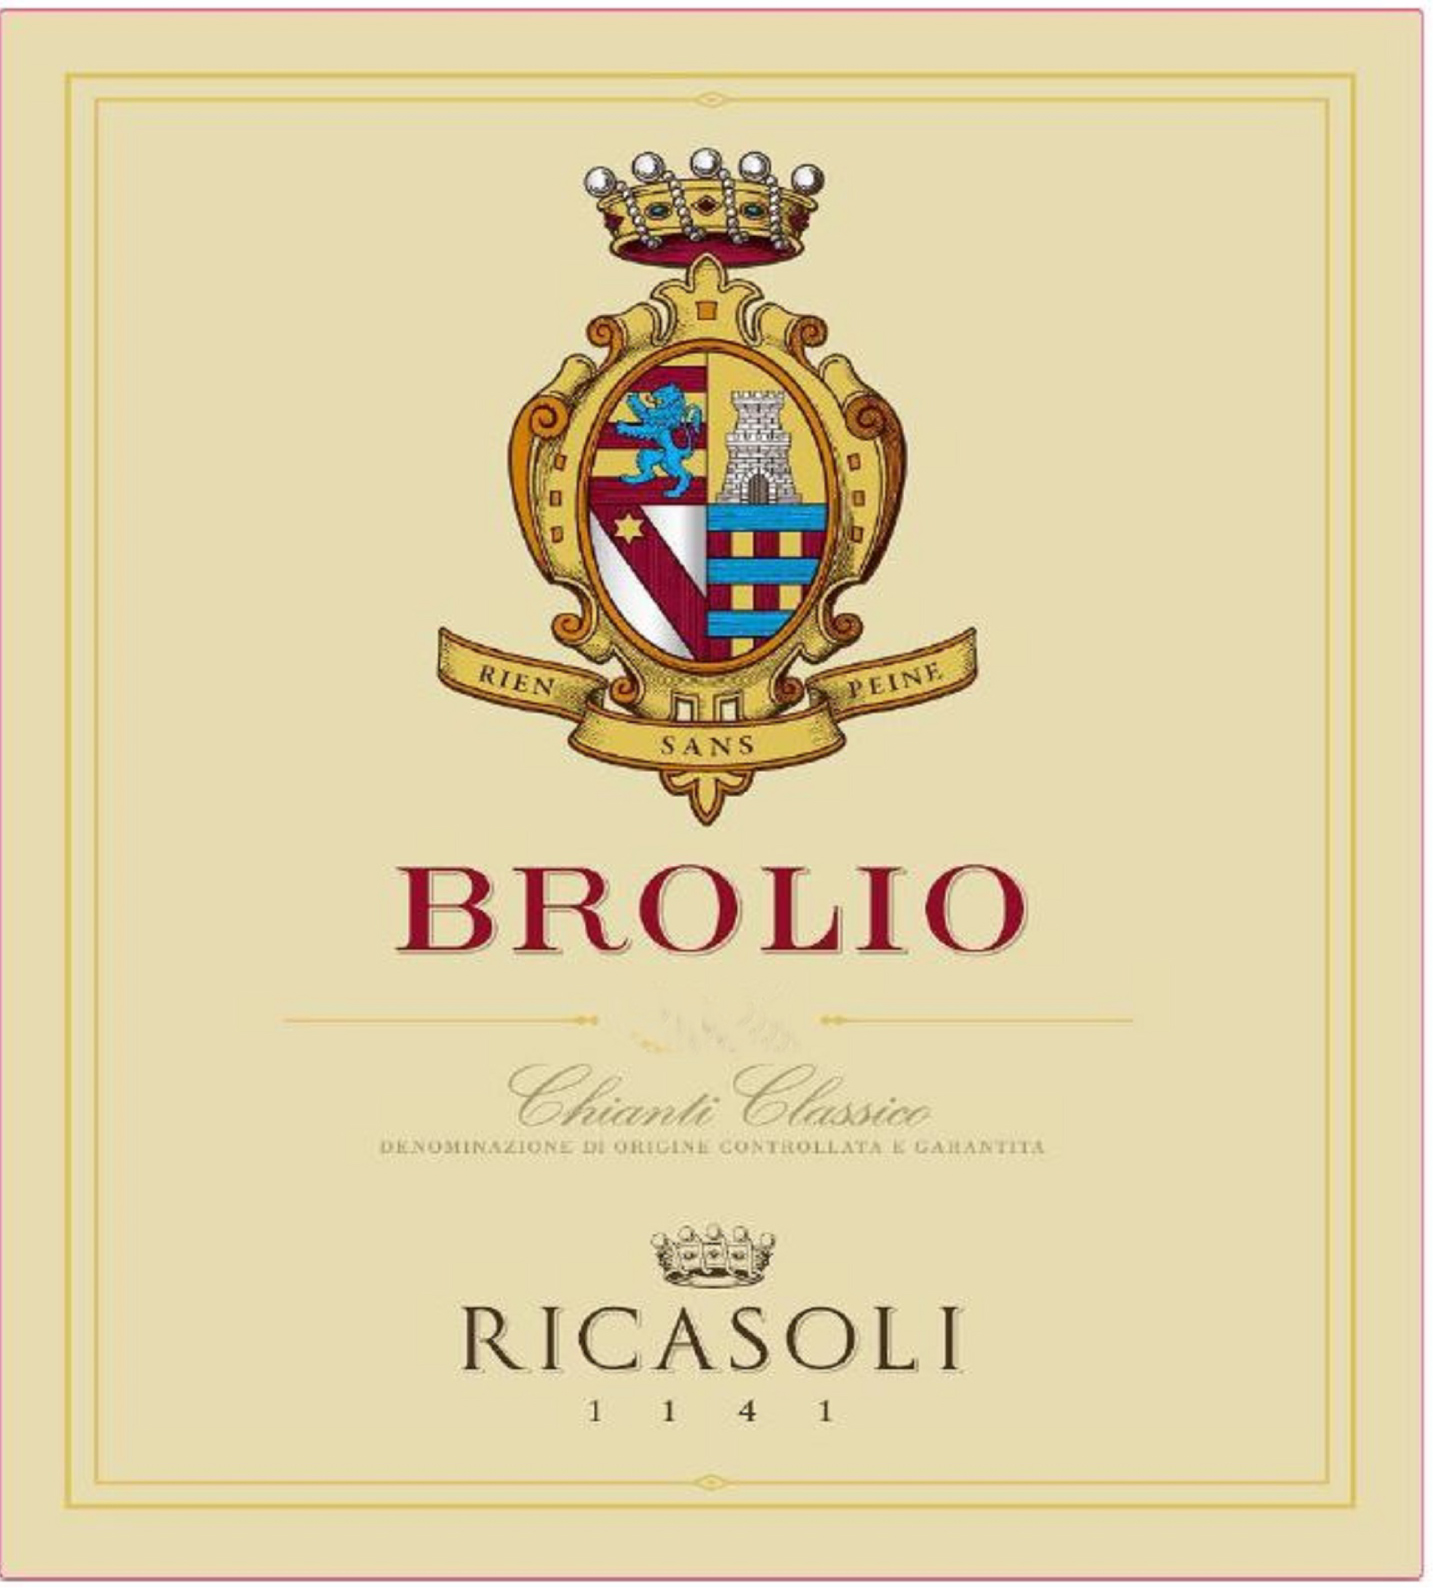 Barone Ricasoli - Brolio Chianti Classico DOCG label